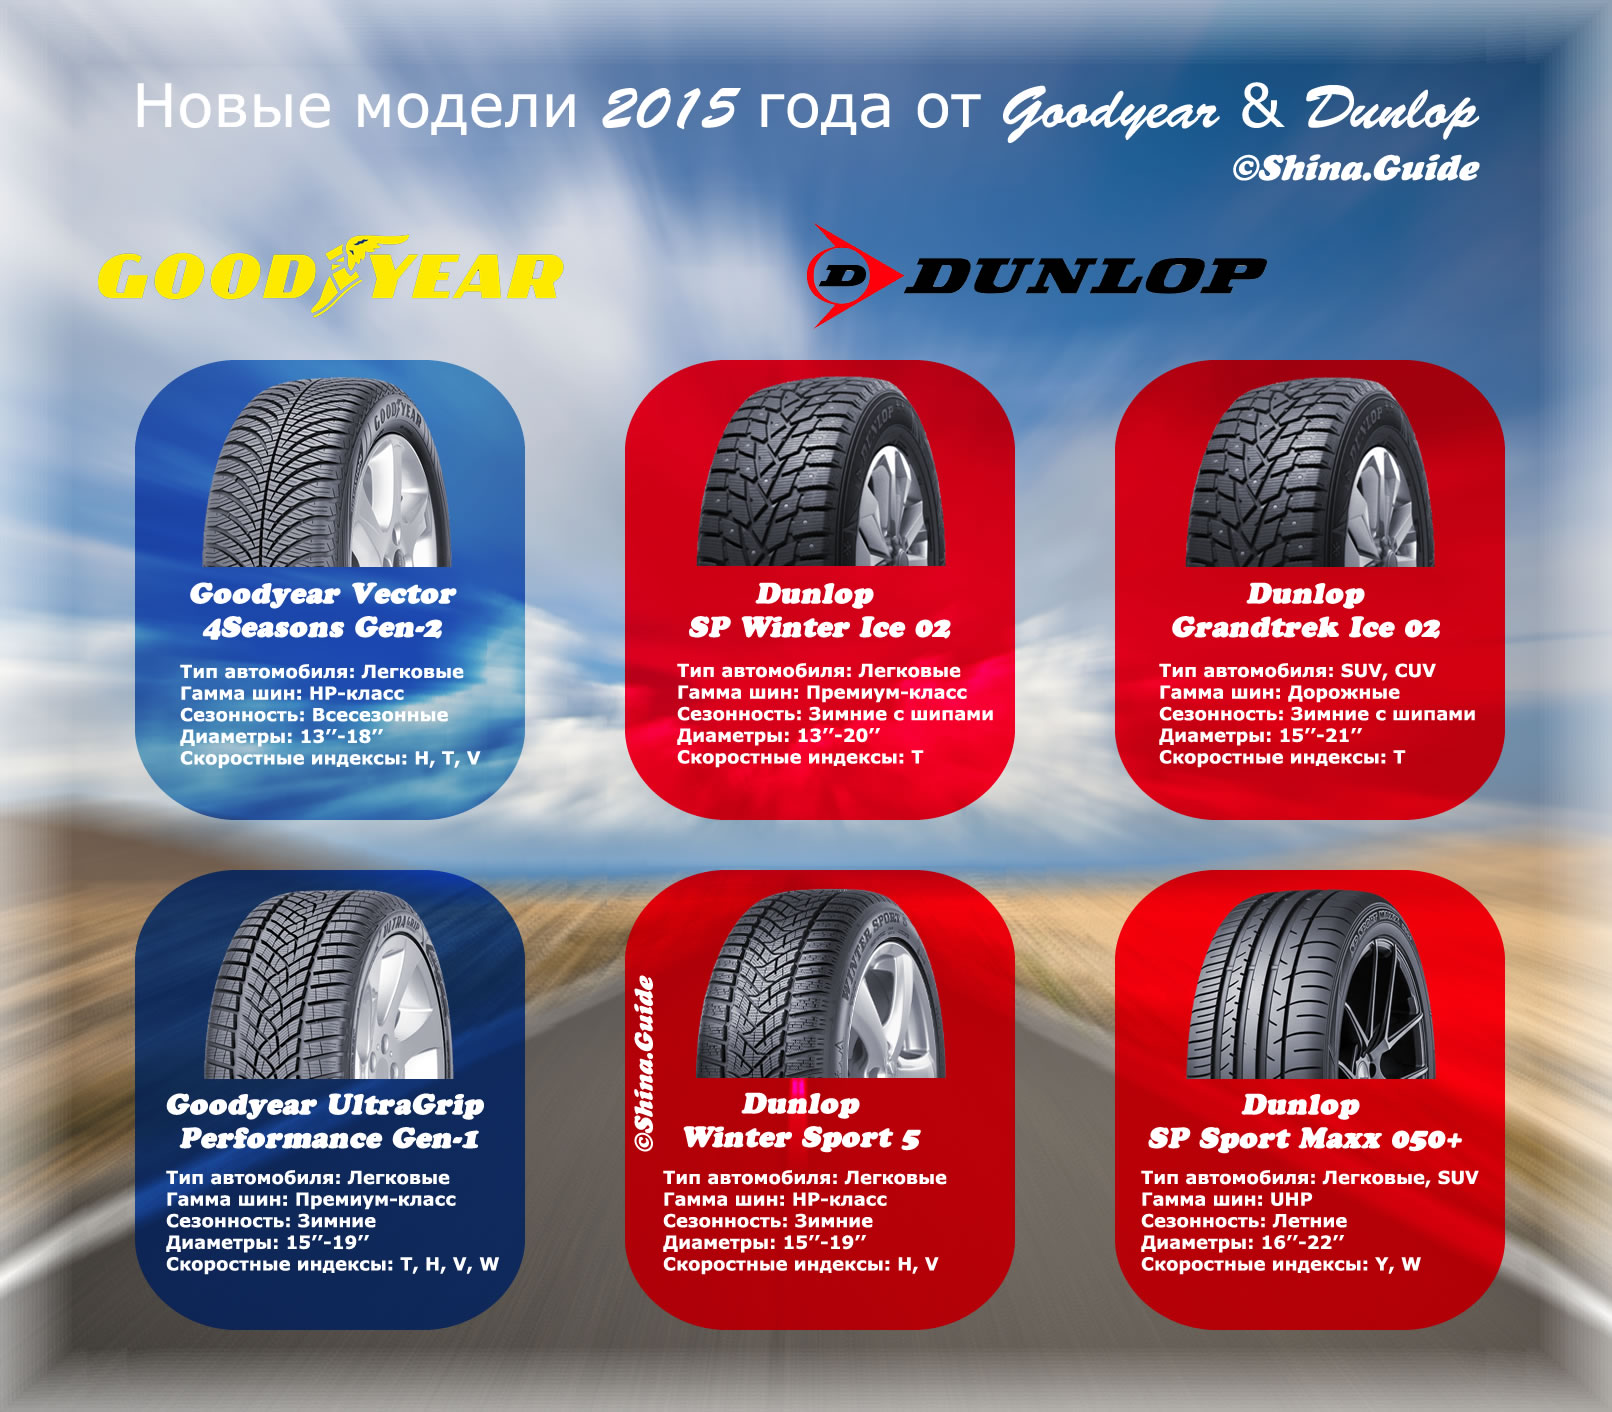 goodyear_dunlop_new_tires_2015